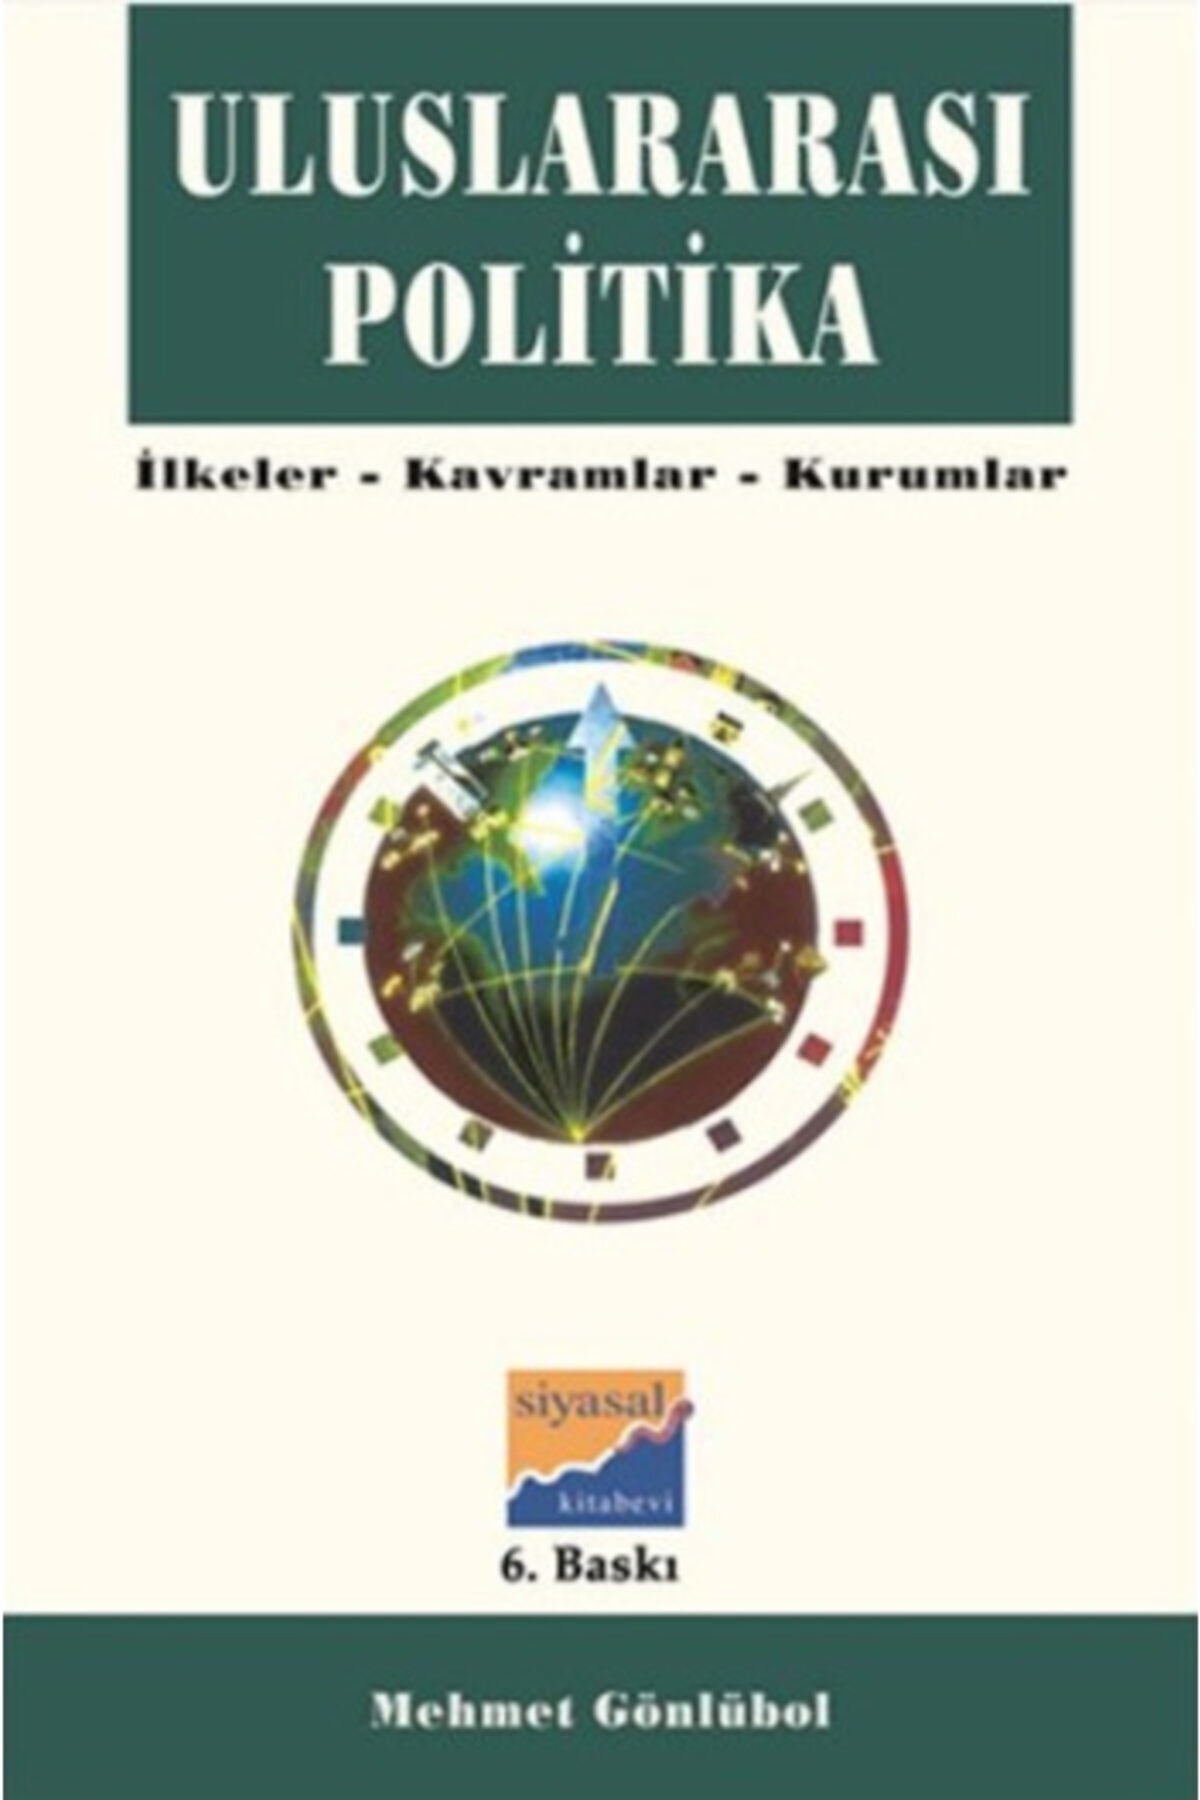 Uluslararası Politika İlkeler-Kavramlar-Kurumlar